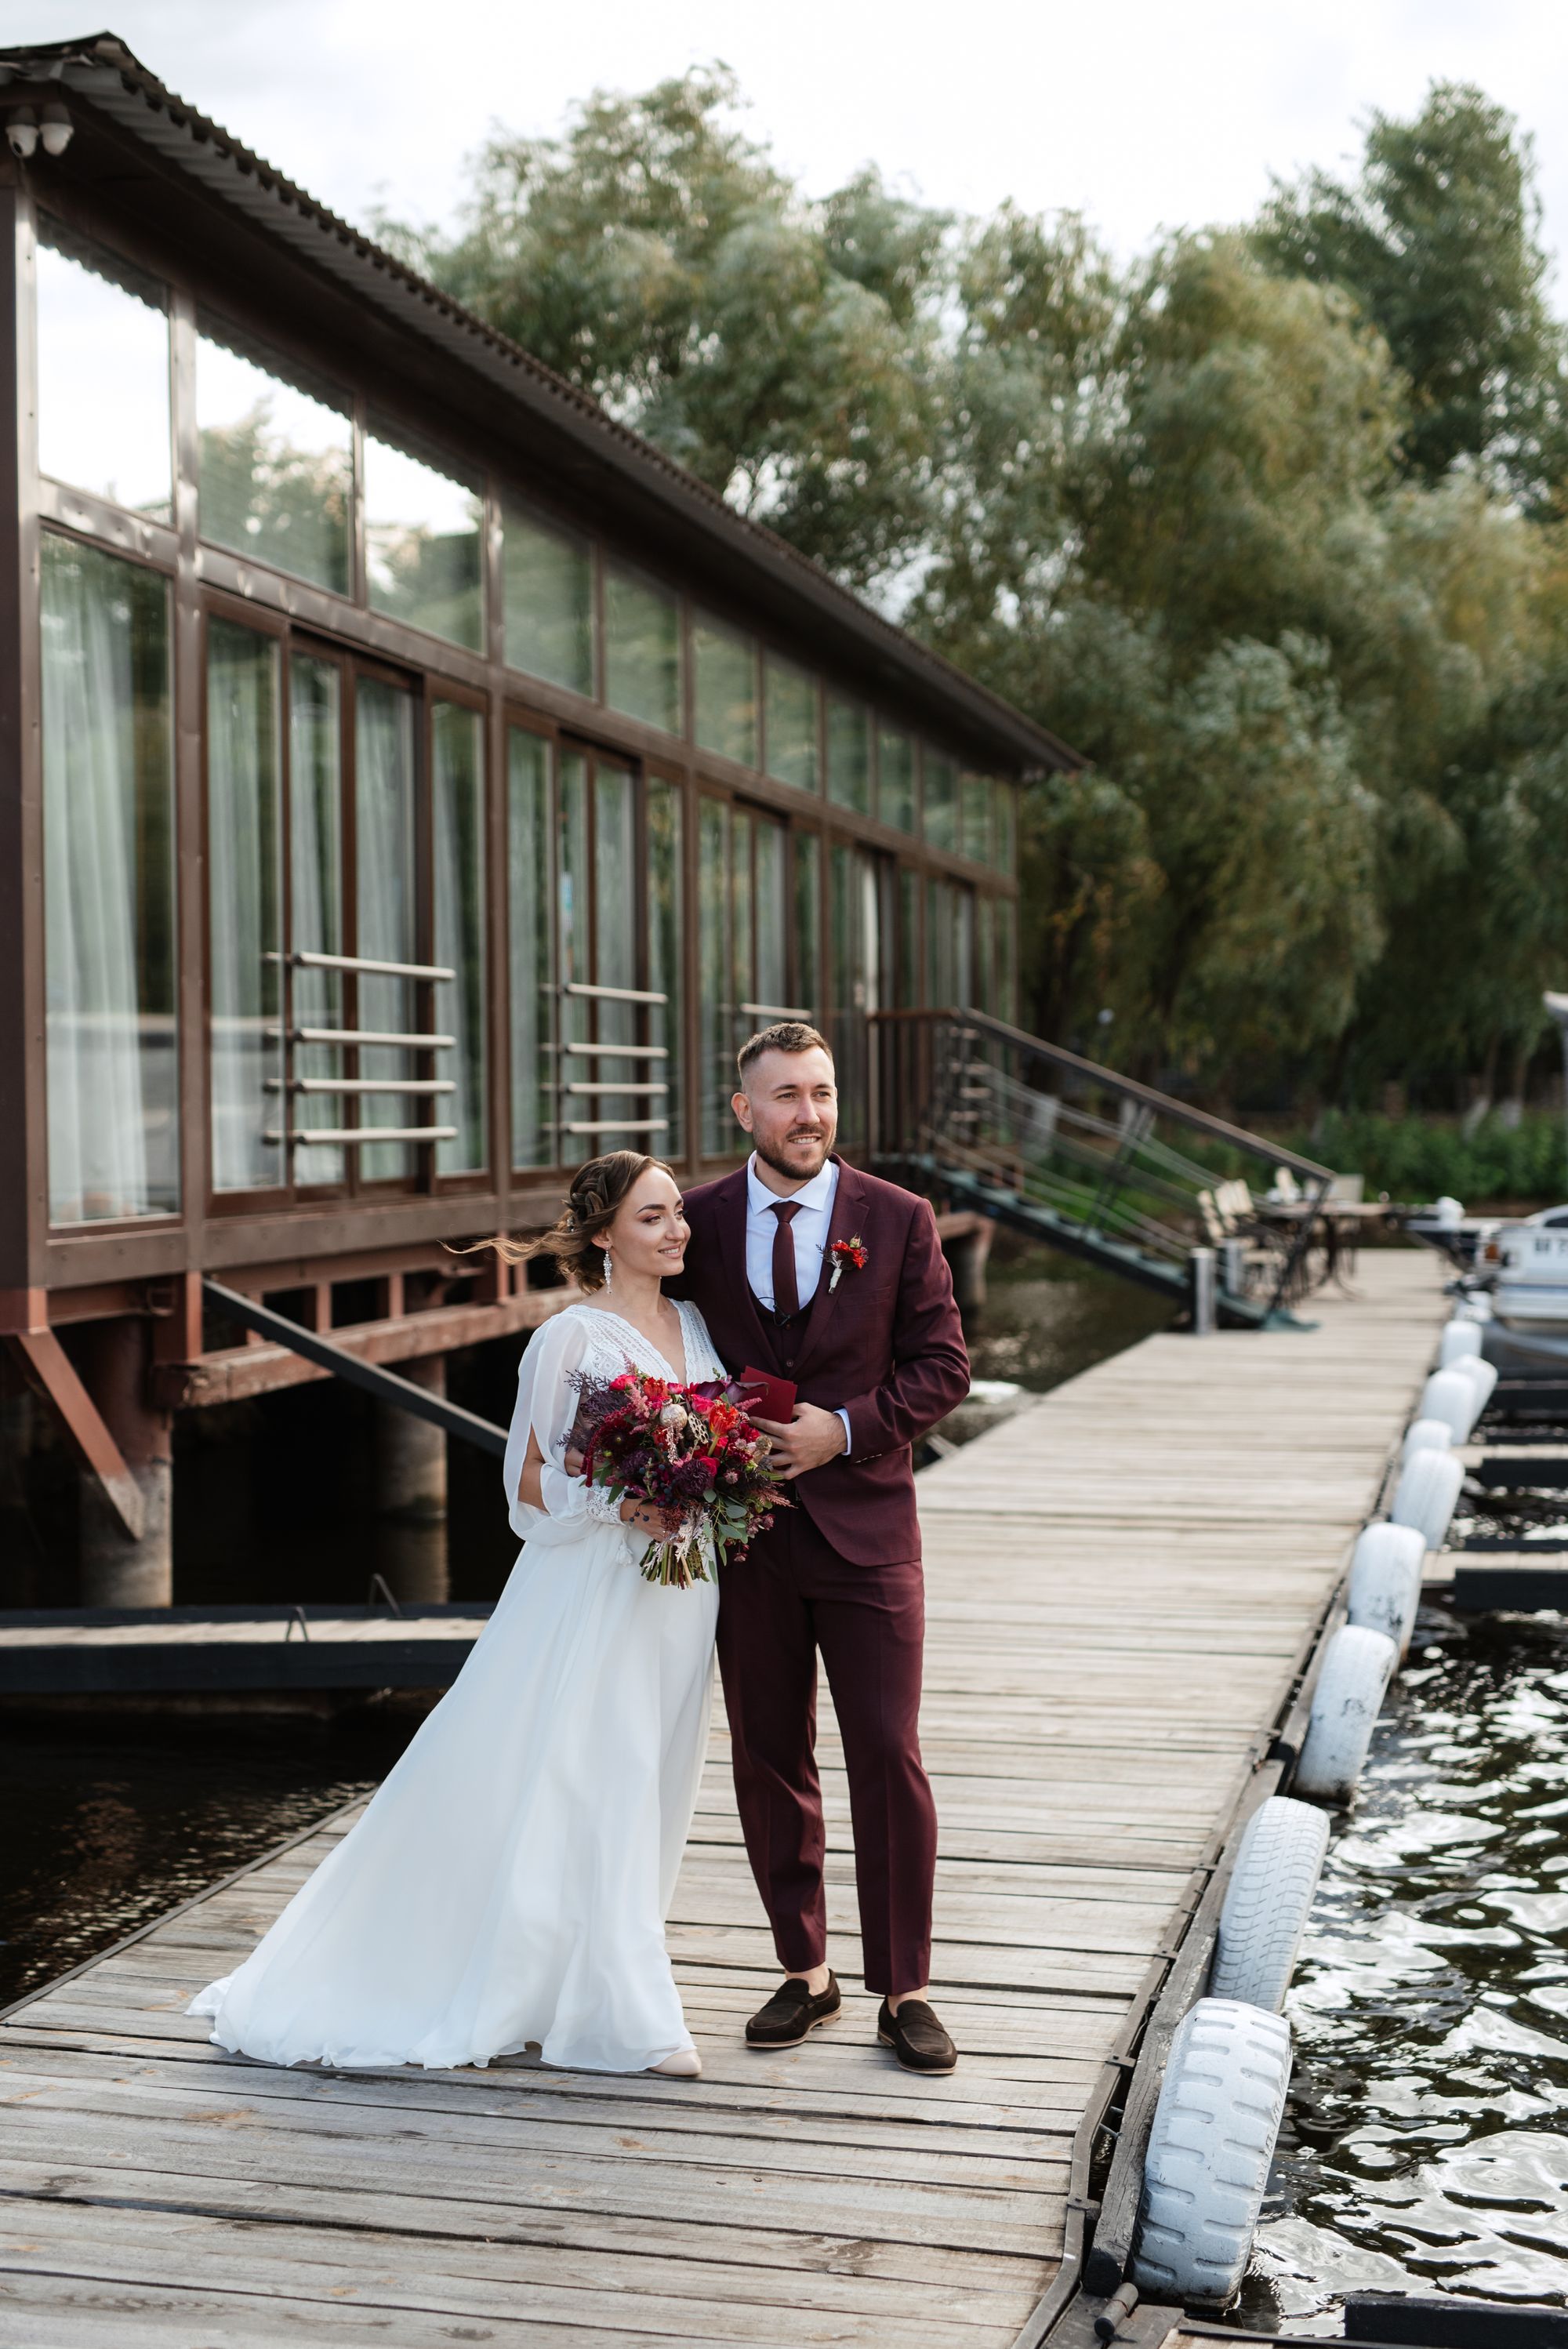 Brautpaar steht auf einem Steg - der Bräutigam trägt einen weinroten Anzug